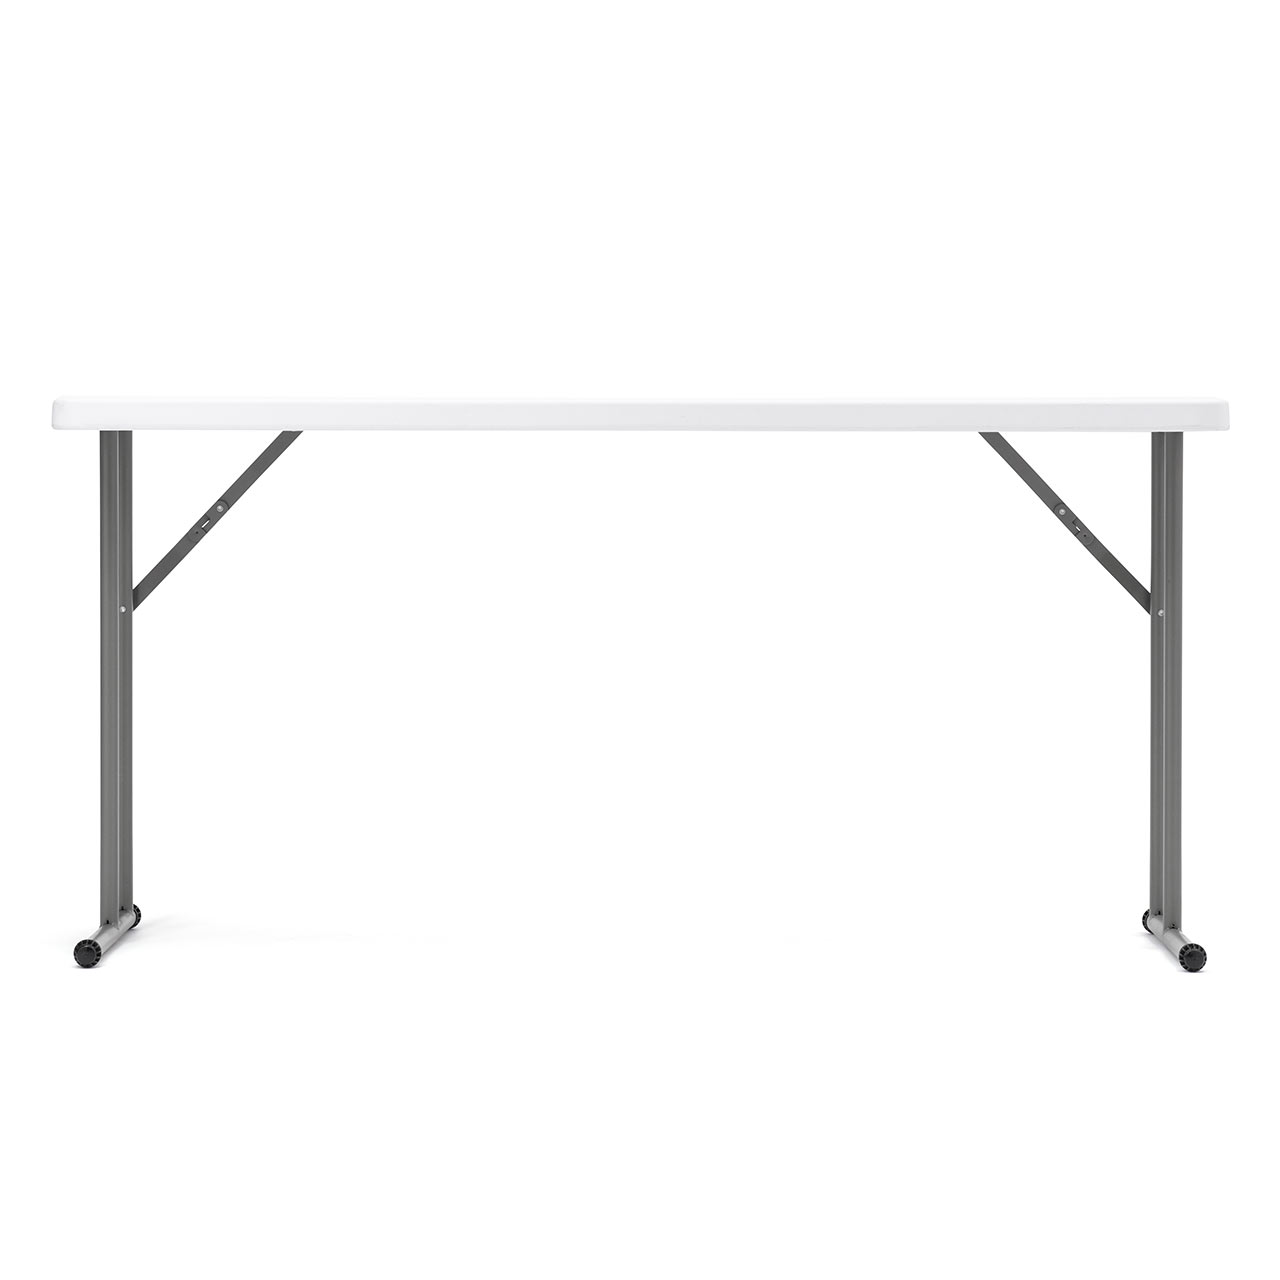 会議テーブル 折りたたみテーブル 省スペース W1520mm D455mm 樹脂天板 作業台 簡単組立 持ち運び 軽量 ホワイト 100-FD022W